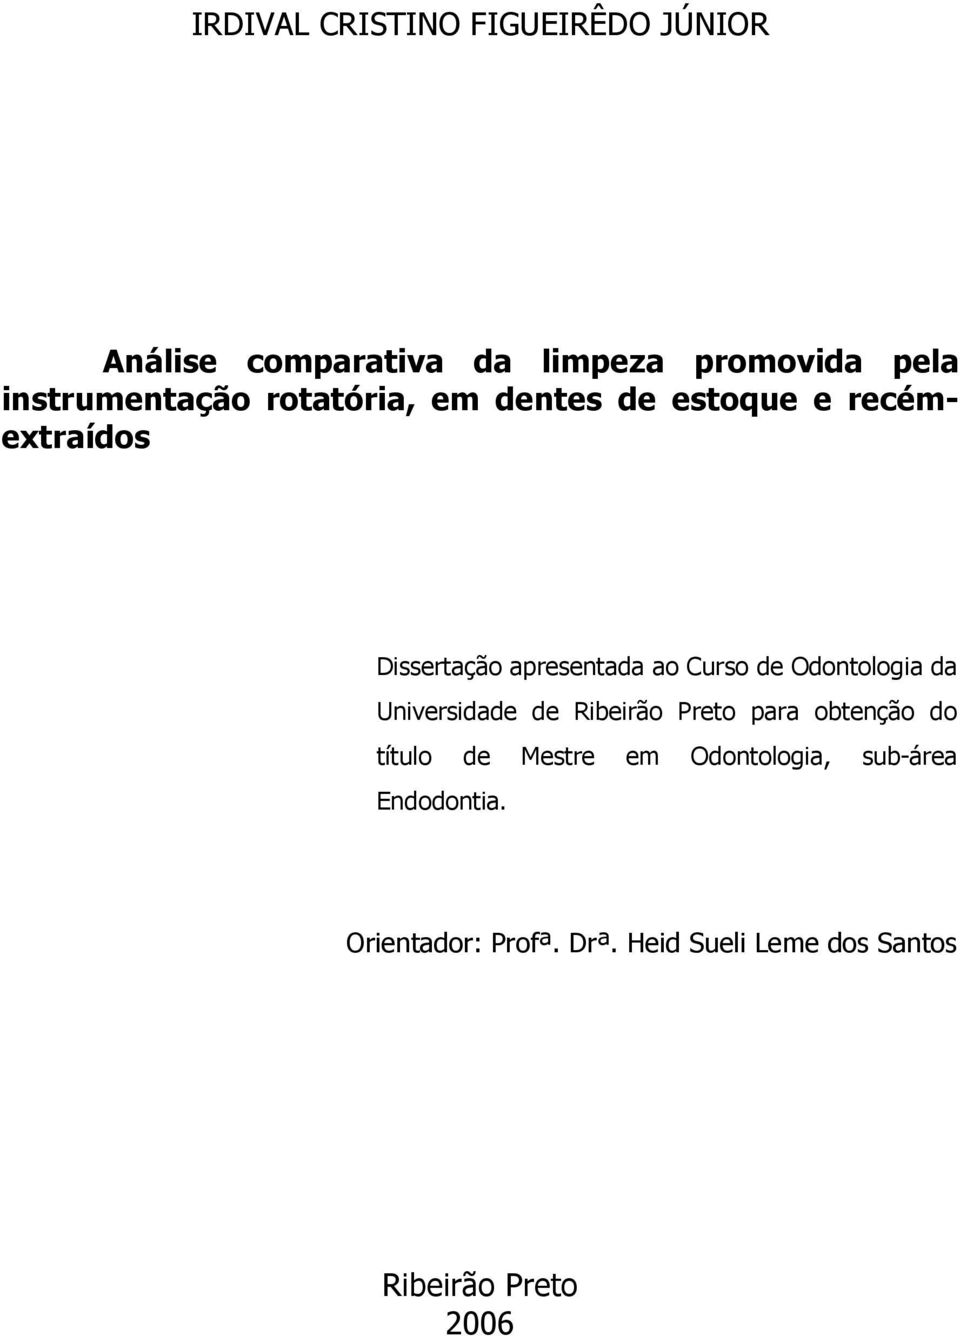 Curso de Odontologia da Universidade de Ribeirão Preto para obtenção do título de Mestre em